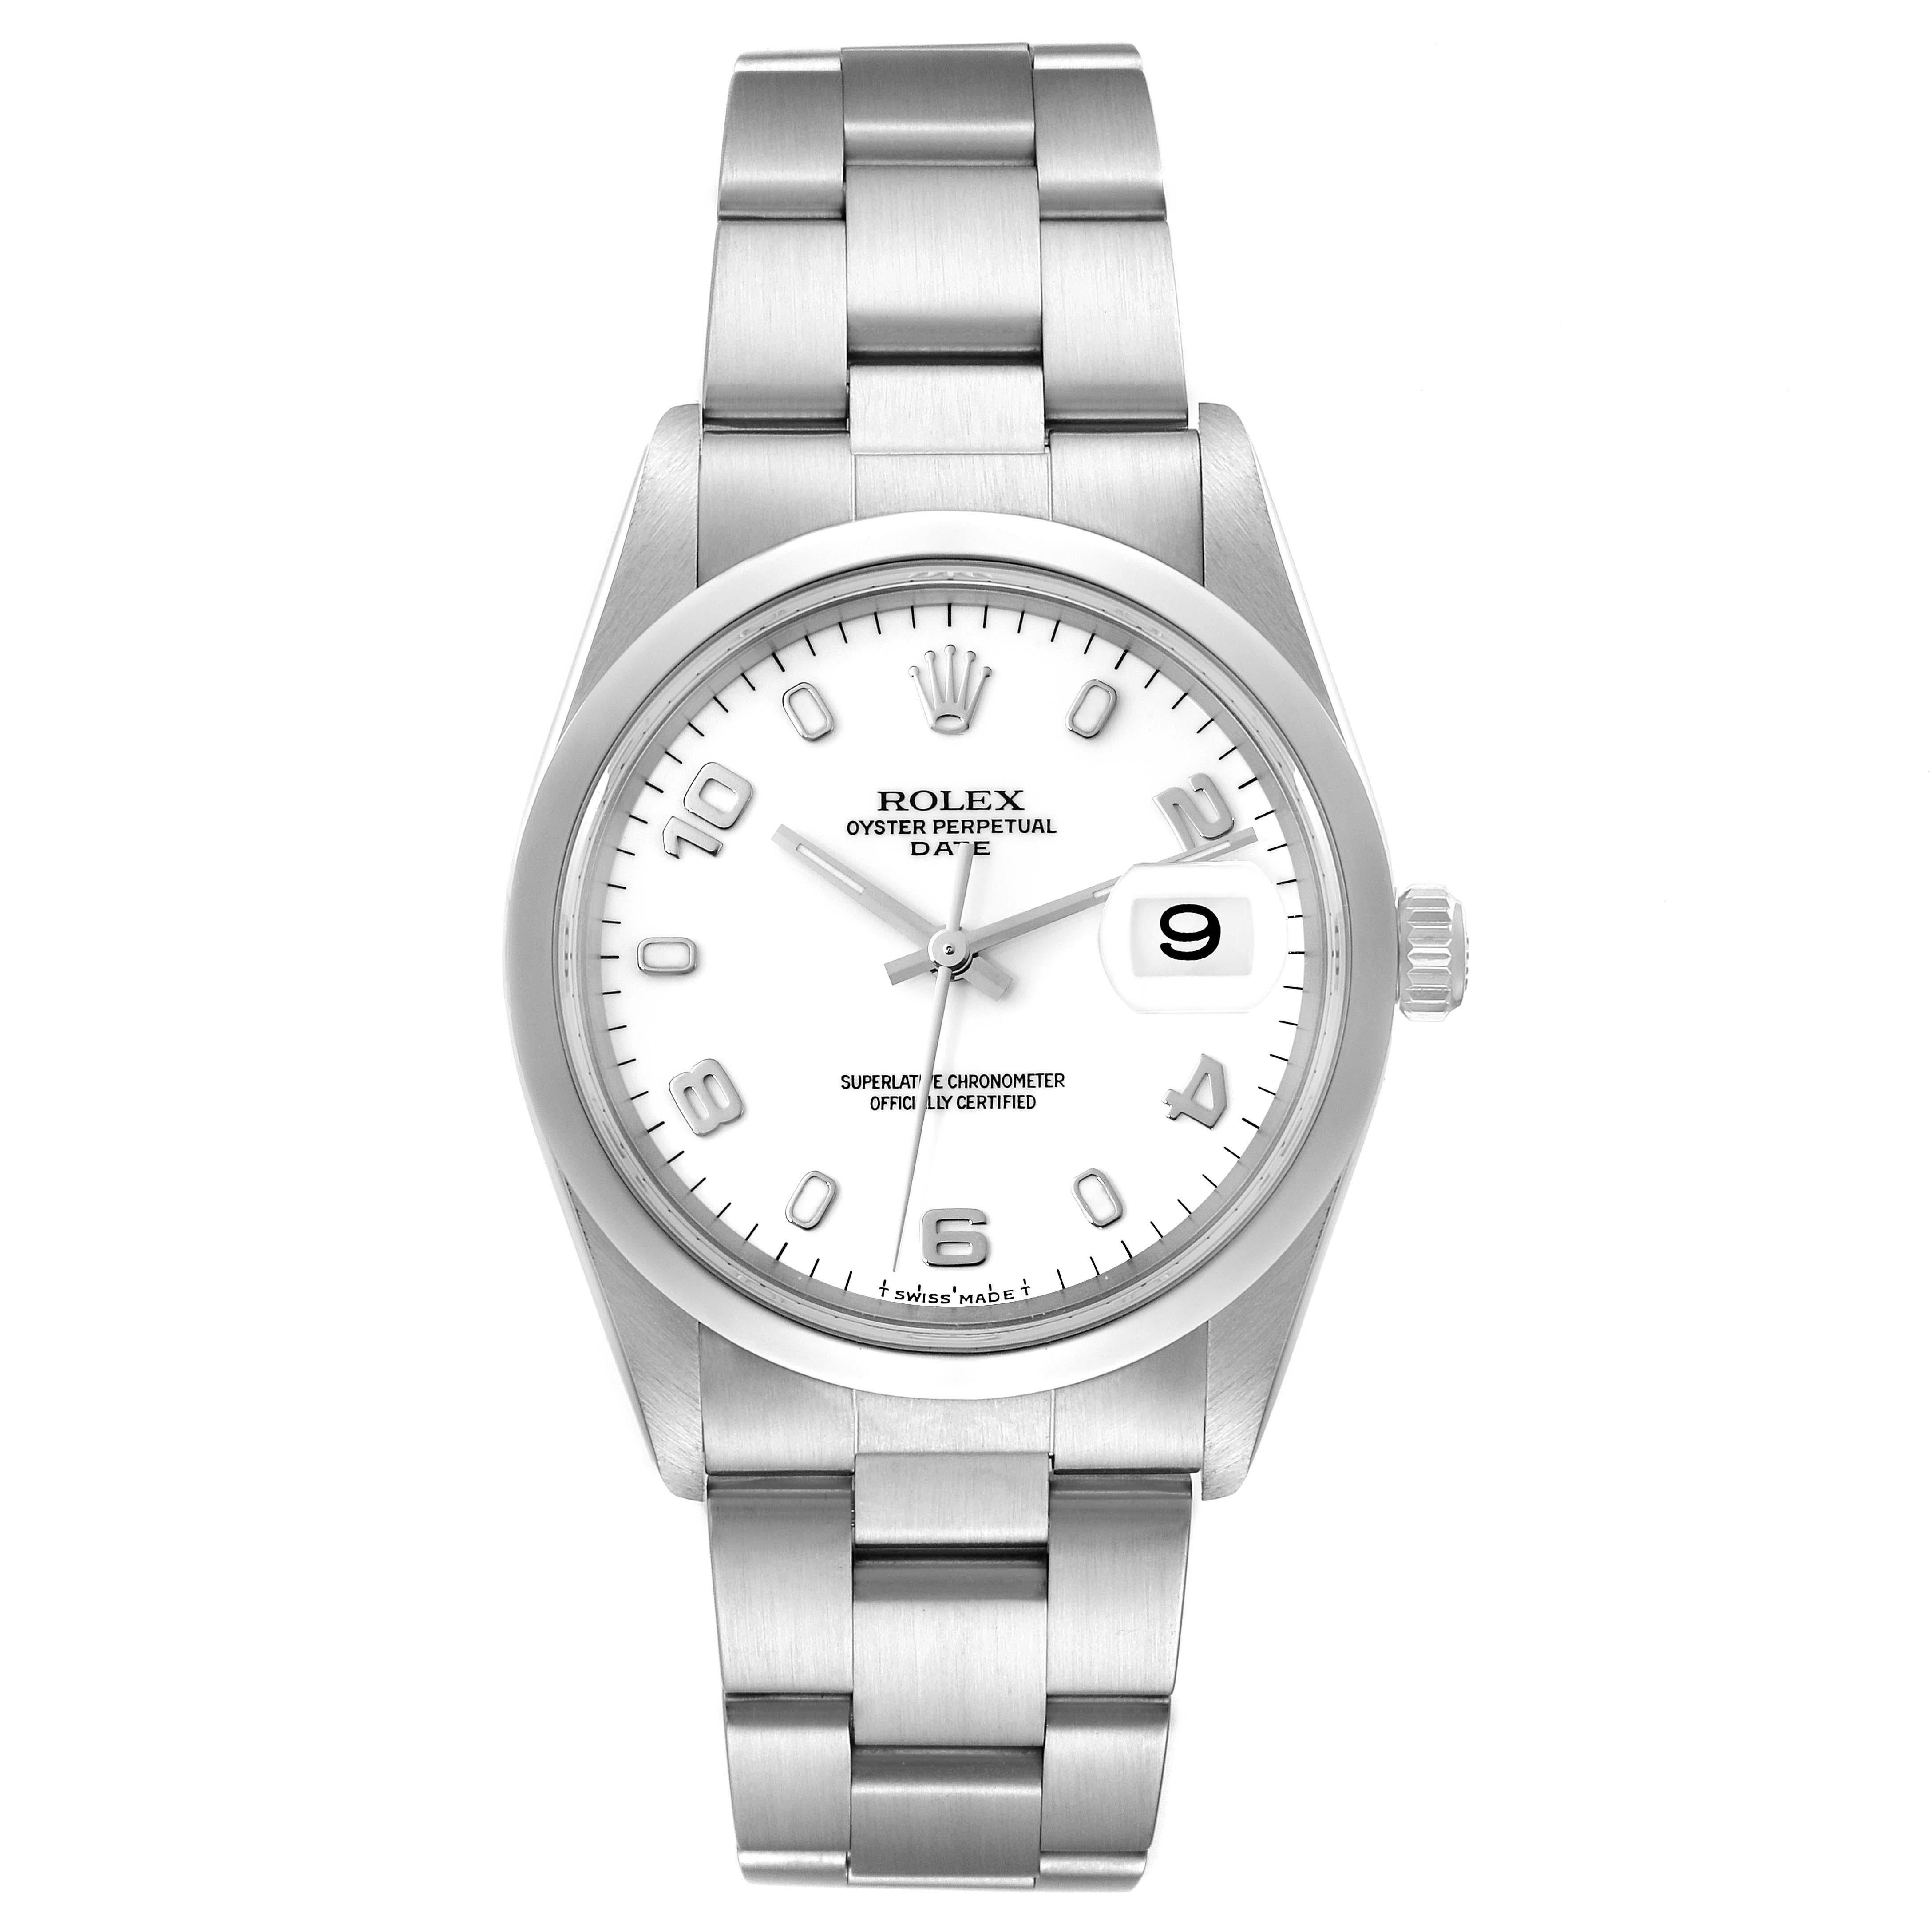 Rolex Date White Dial Oyster Bracelet Steel Mens Watch 15200. Mouvement automatique à remontage automatique, officiellement certifié chronomètre. Boîtier oyster en acier inoxydable de 34.0 mm de diamètre. Logo Rolex sur la couronne. Lunette lisse en